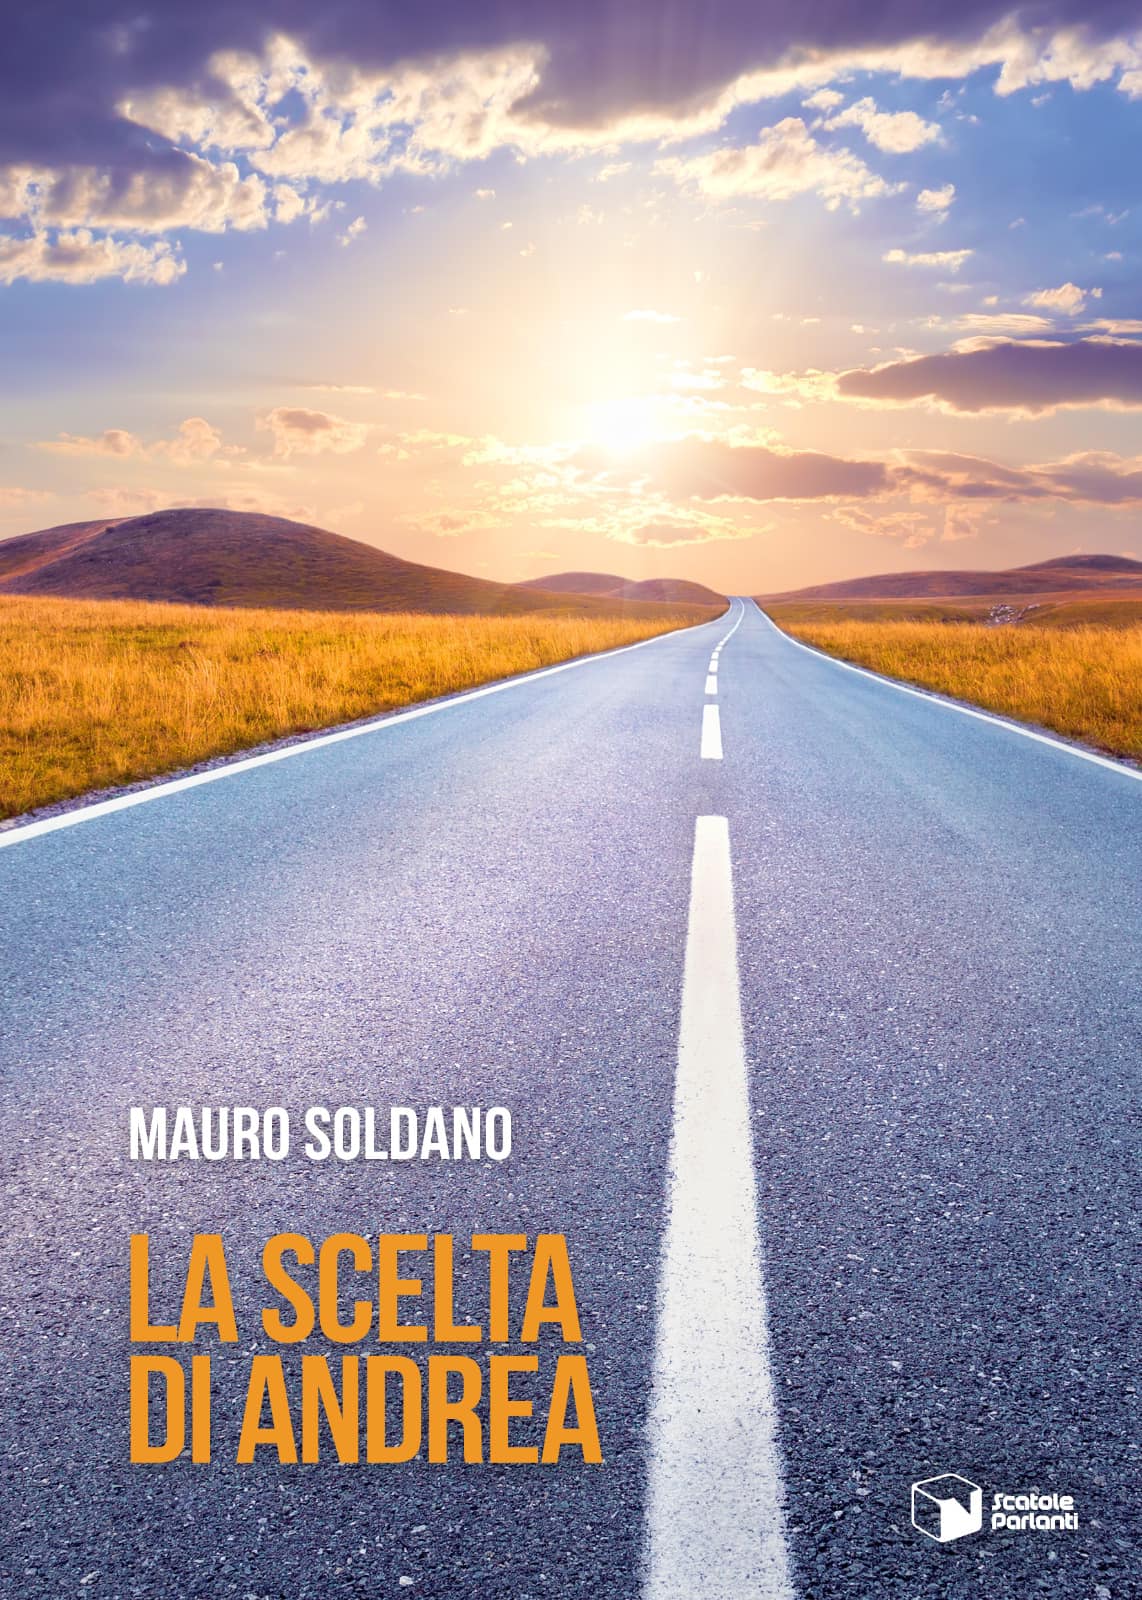 Libri: alla libreria À la Page il nuovo libro di Mauro Soldano